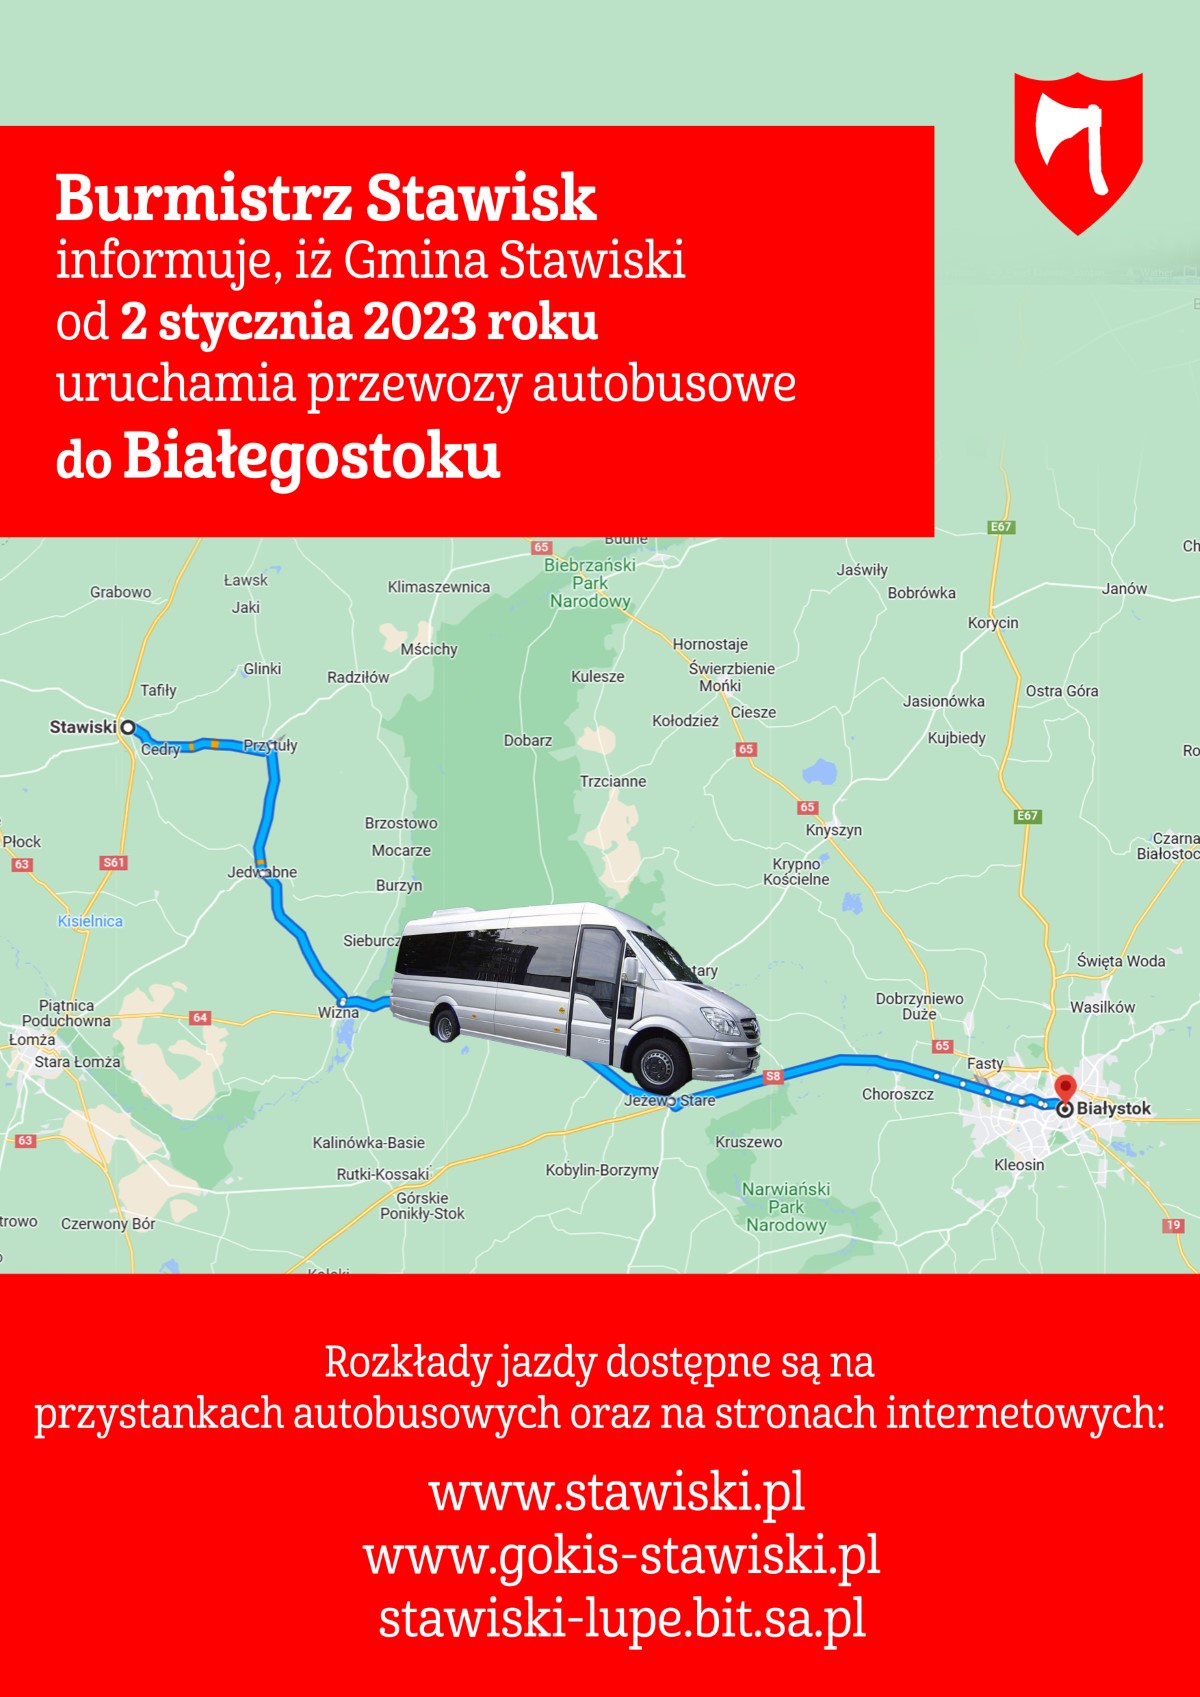 Od 2 stycznia 2023 roku uruchomione zostaną przewozy autobusowe do Białegostoku